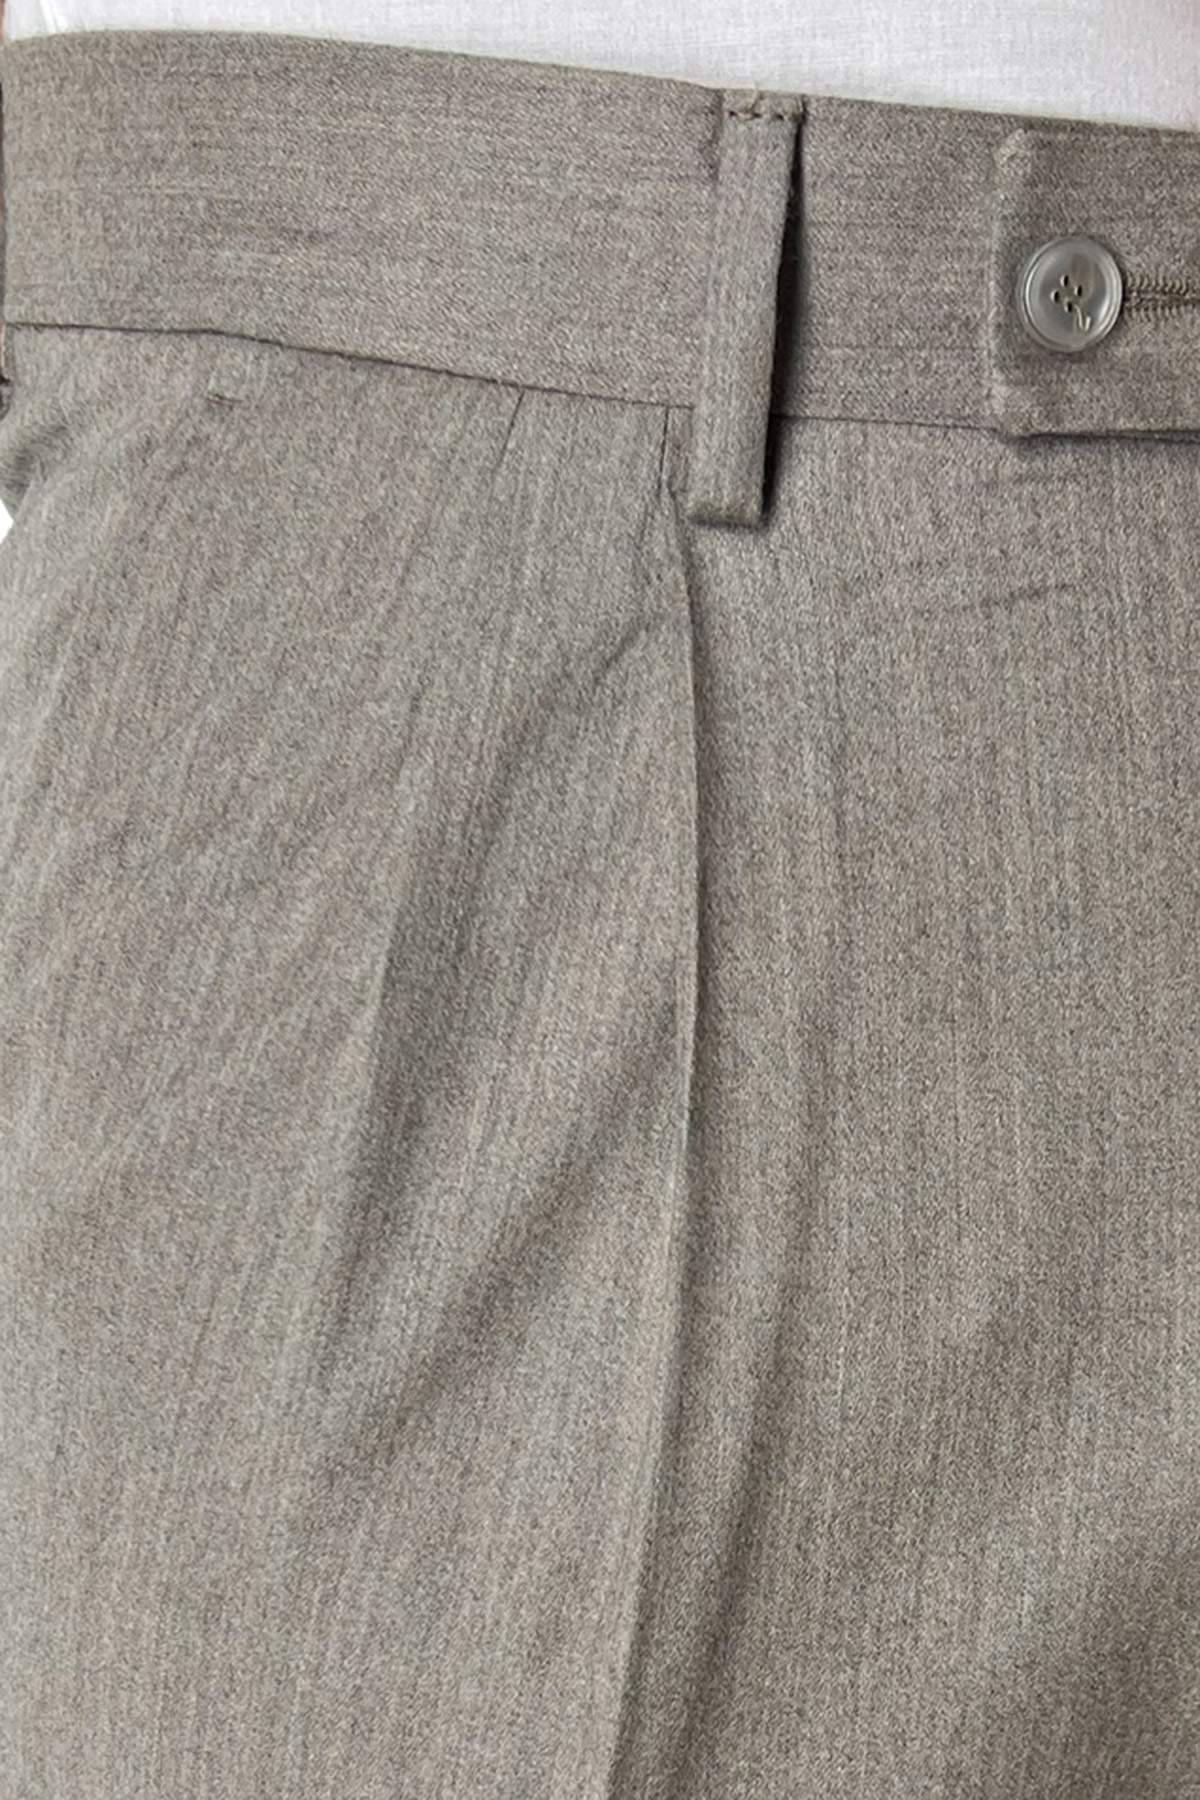 Pantalone uomo beige vita alta tasca america in lana flanella con doppia pinces